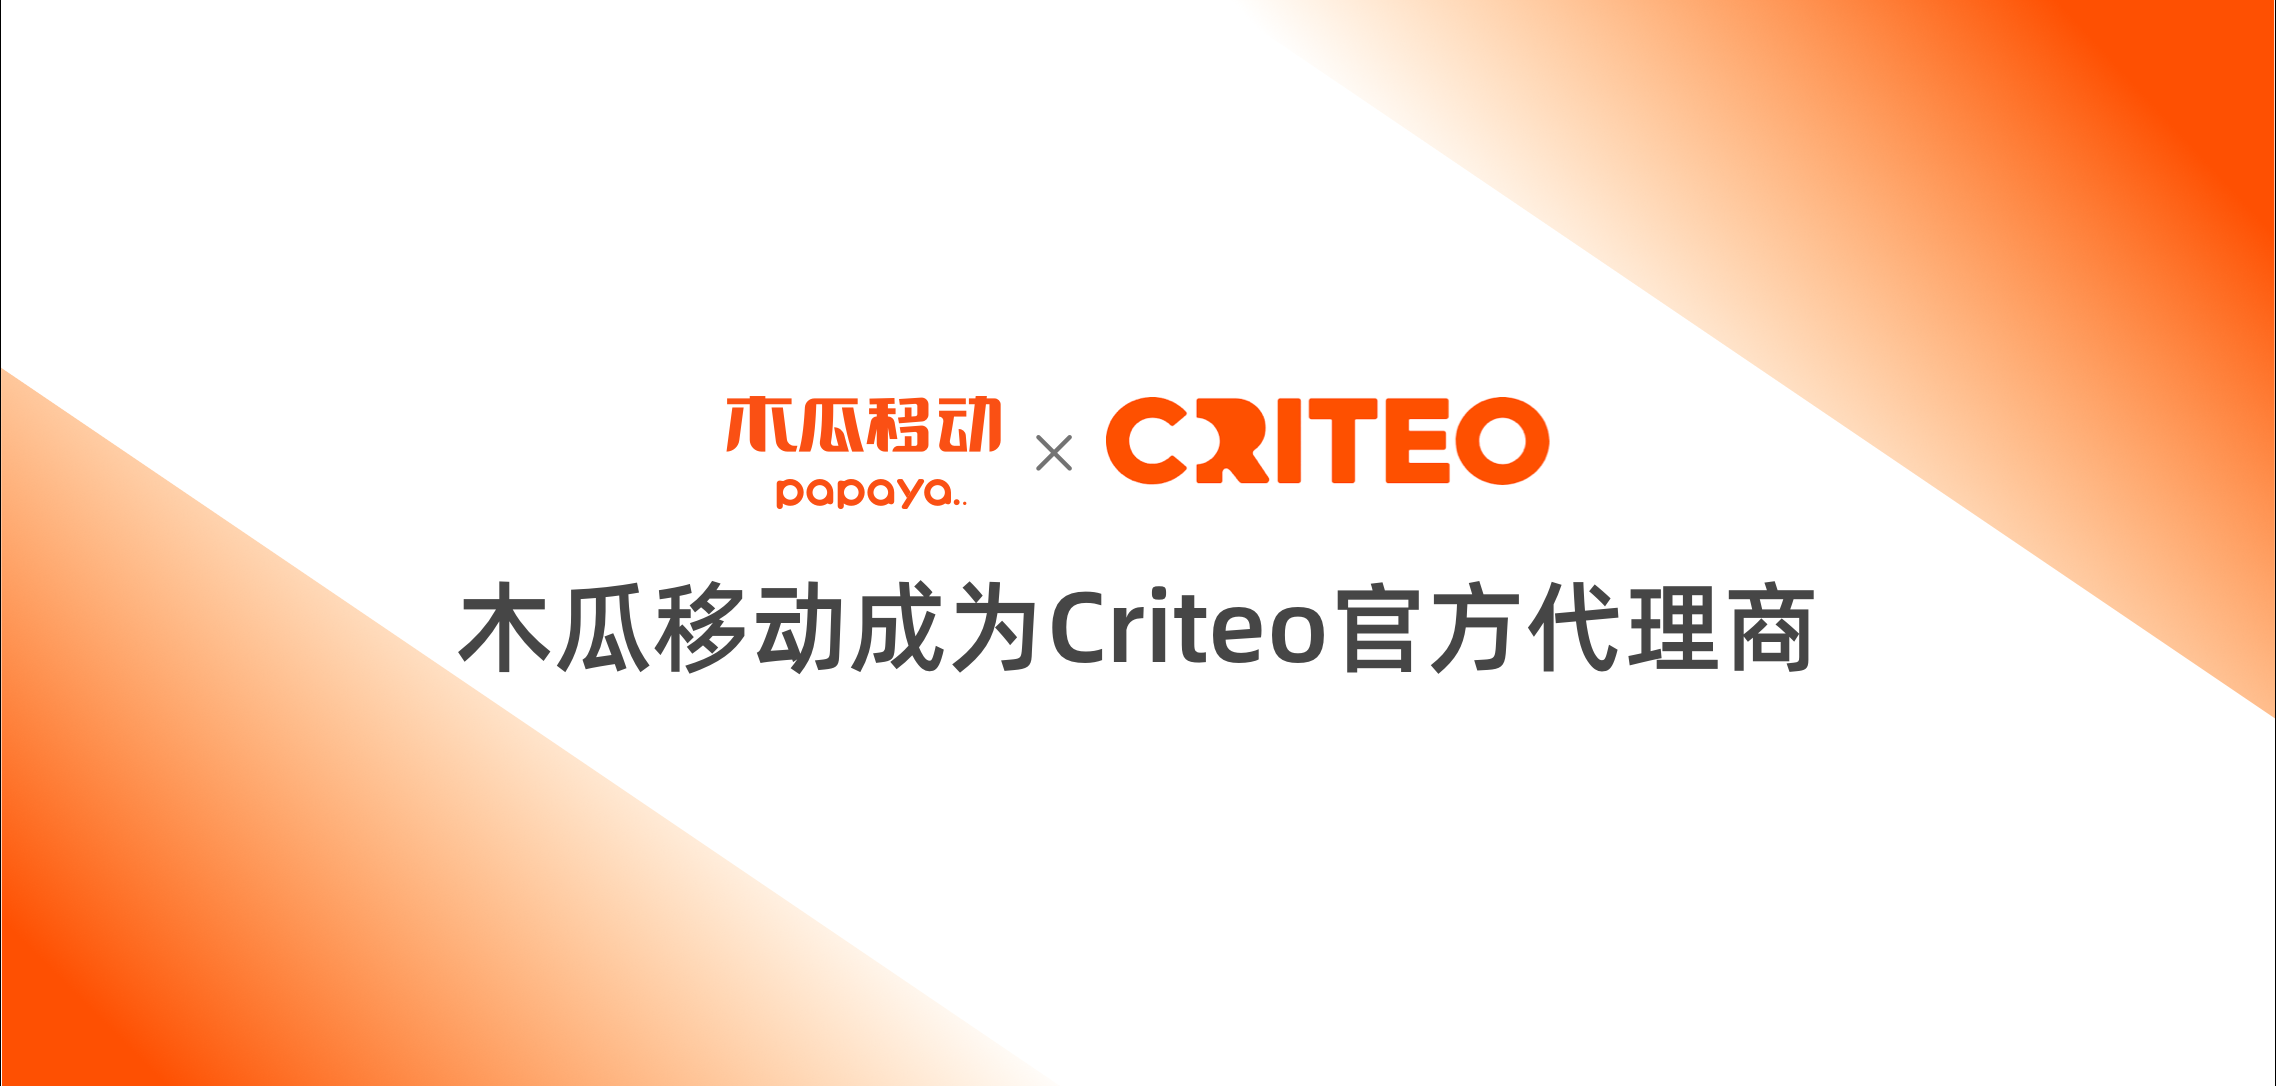 海外广告服务商木瓜移动联合Criteo，助力跨境电商企业实现快速增长和扩张